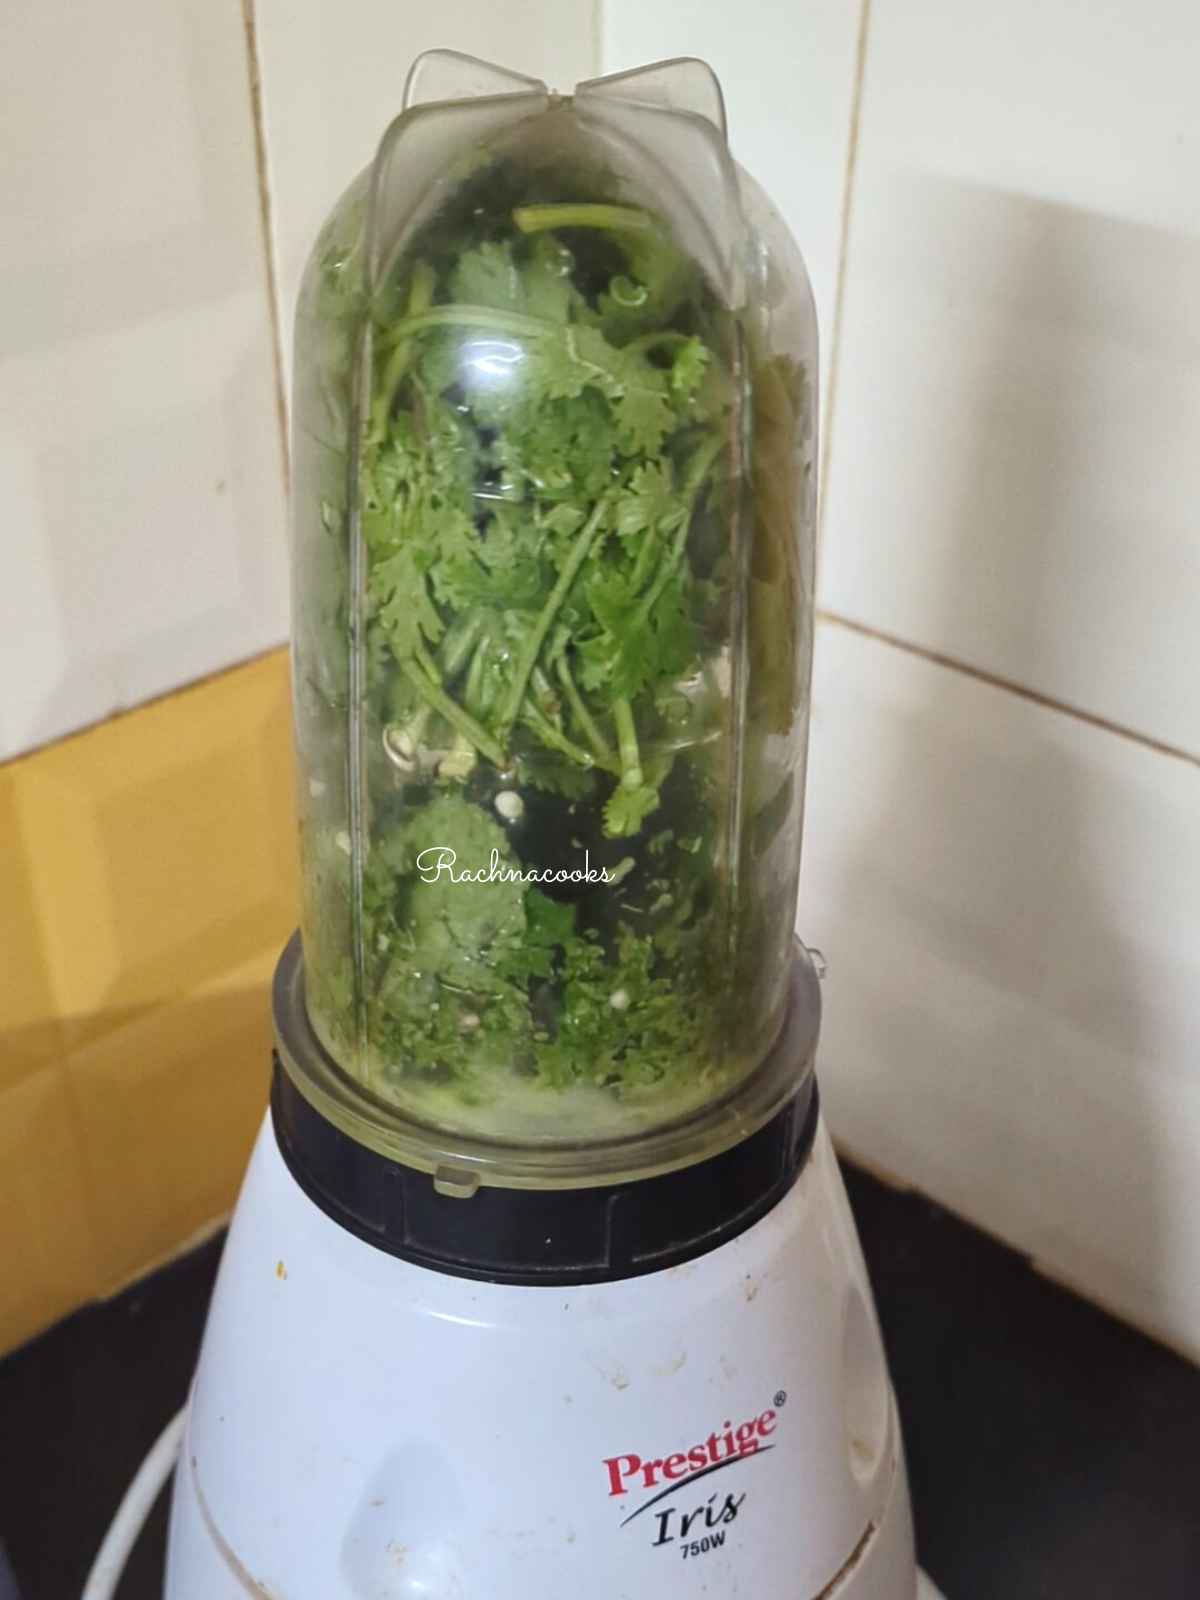 Ginger, garlic, chilli, cilantro leaves and mint in a blender jar for blending.